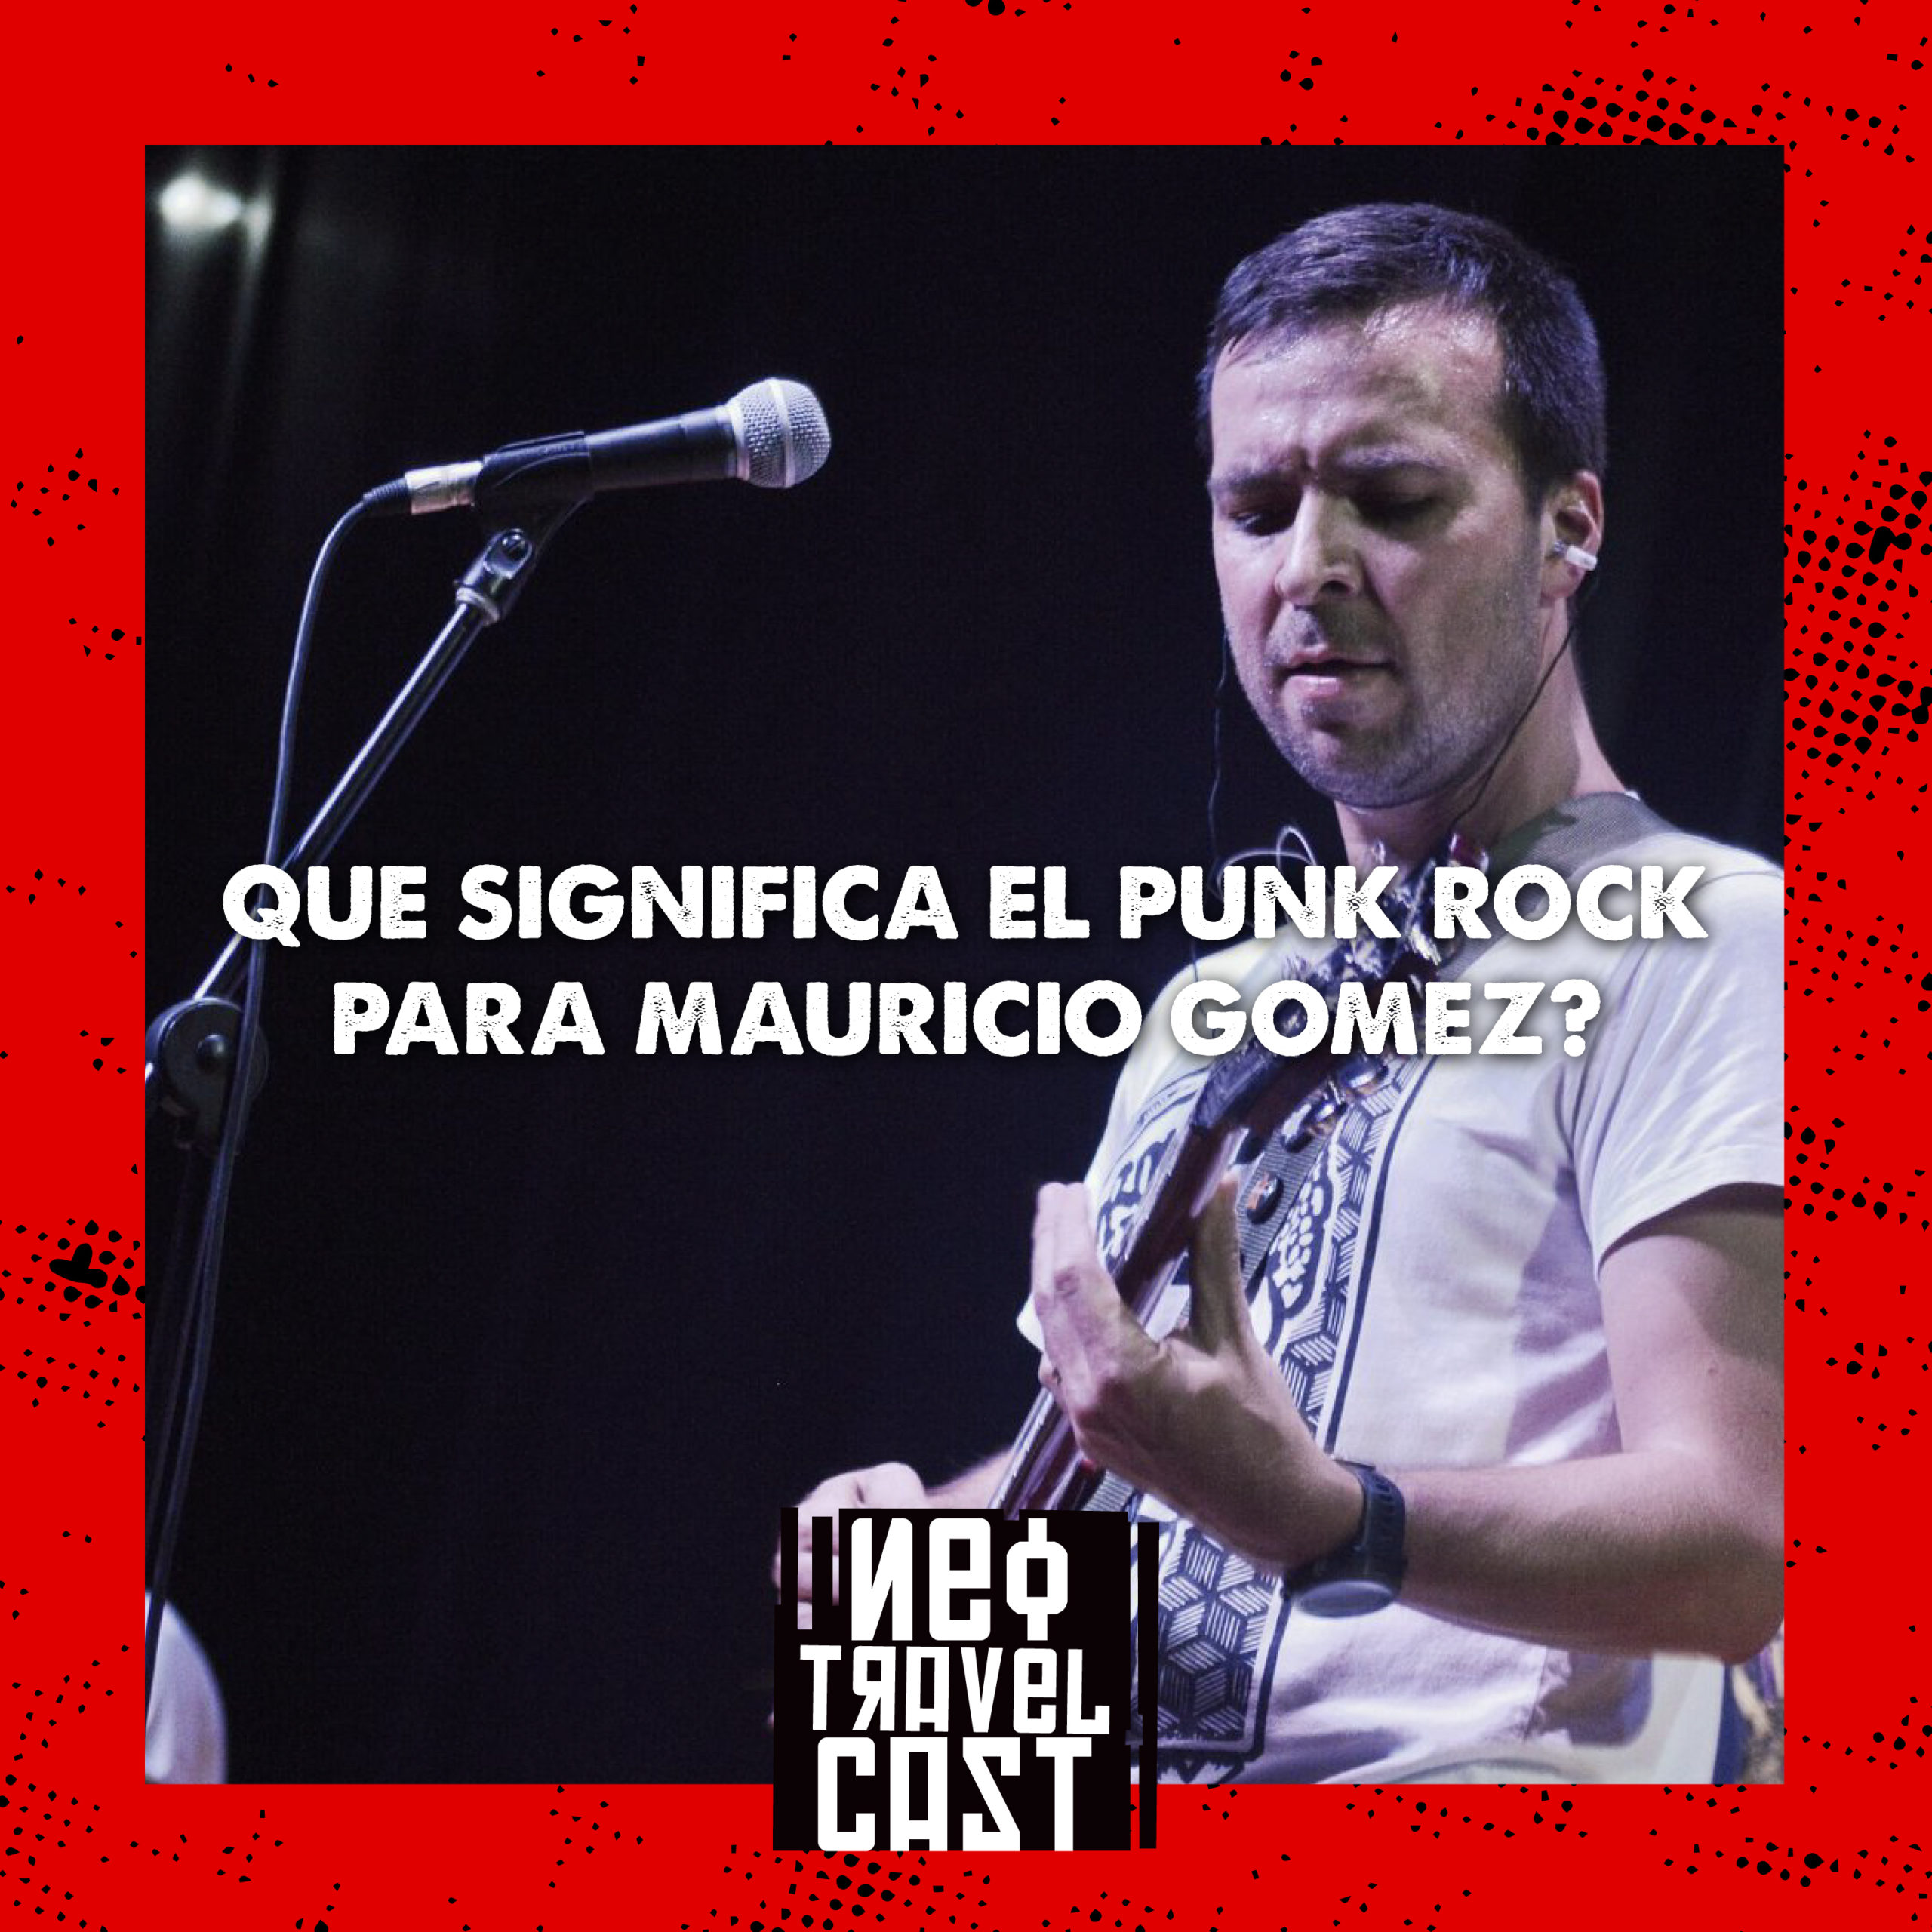 Neo Travel Cast - Que significa el punk rock para Mauricio Gomez?